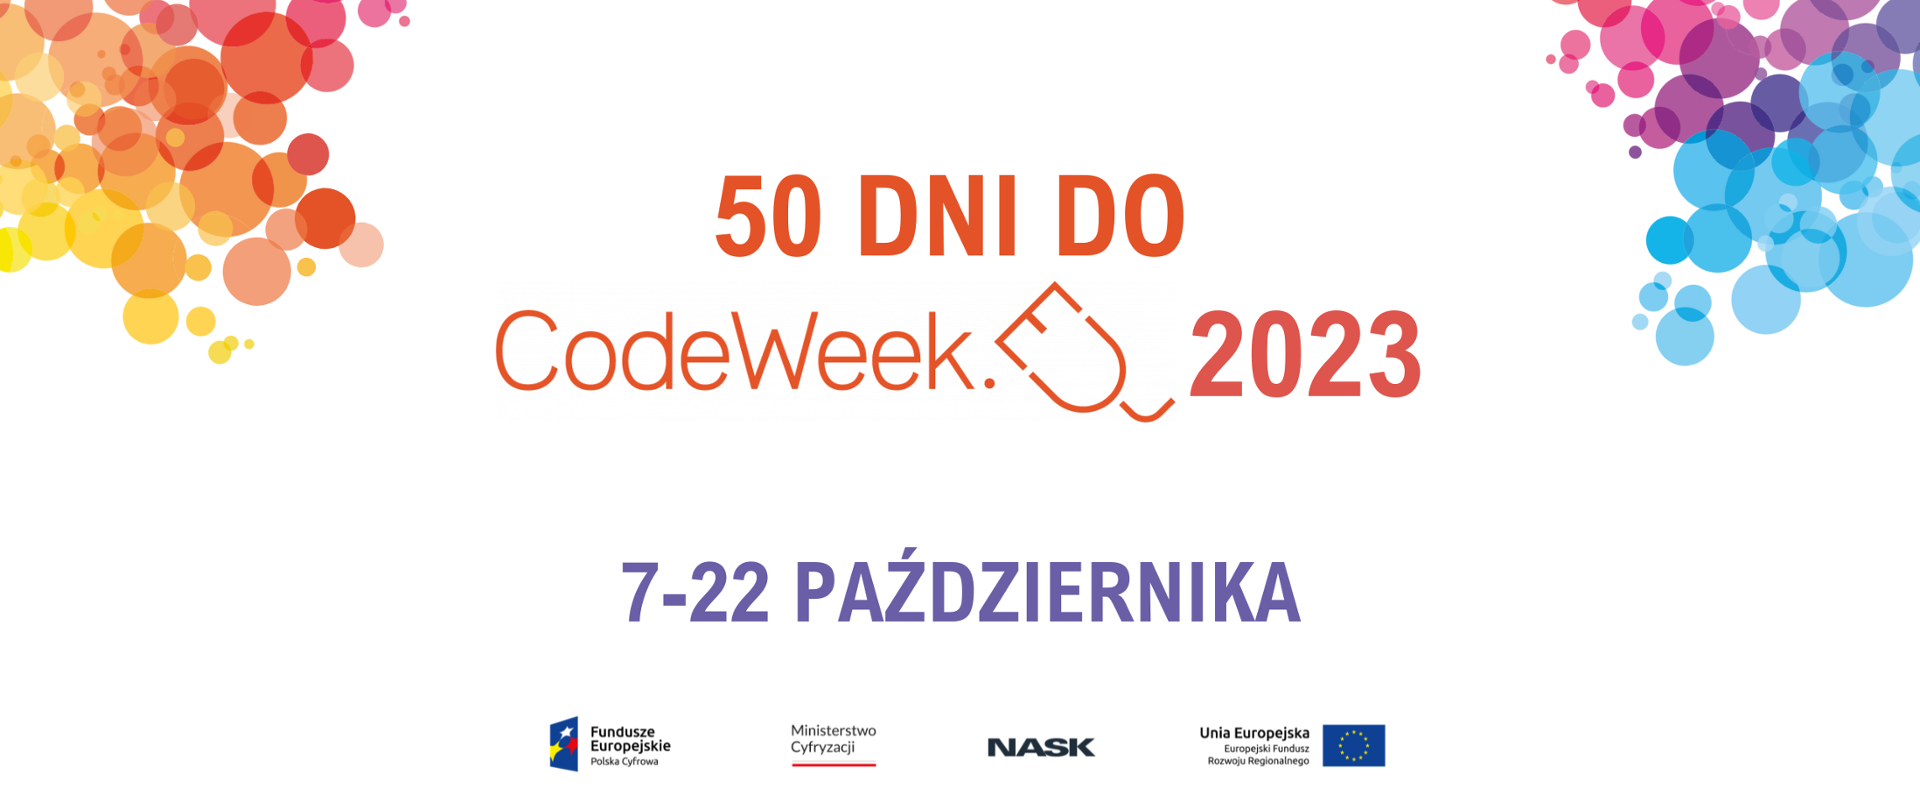 Grafika wektorowa z tekstem: 50 dni do CodeWeek 2023, 7-22 października. Na dole logotypy: Fundusze Europejskie, Ministerstwo Cyfryzacji, NASK, Unia Europejska.